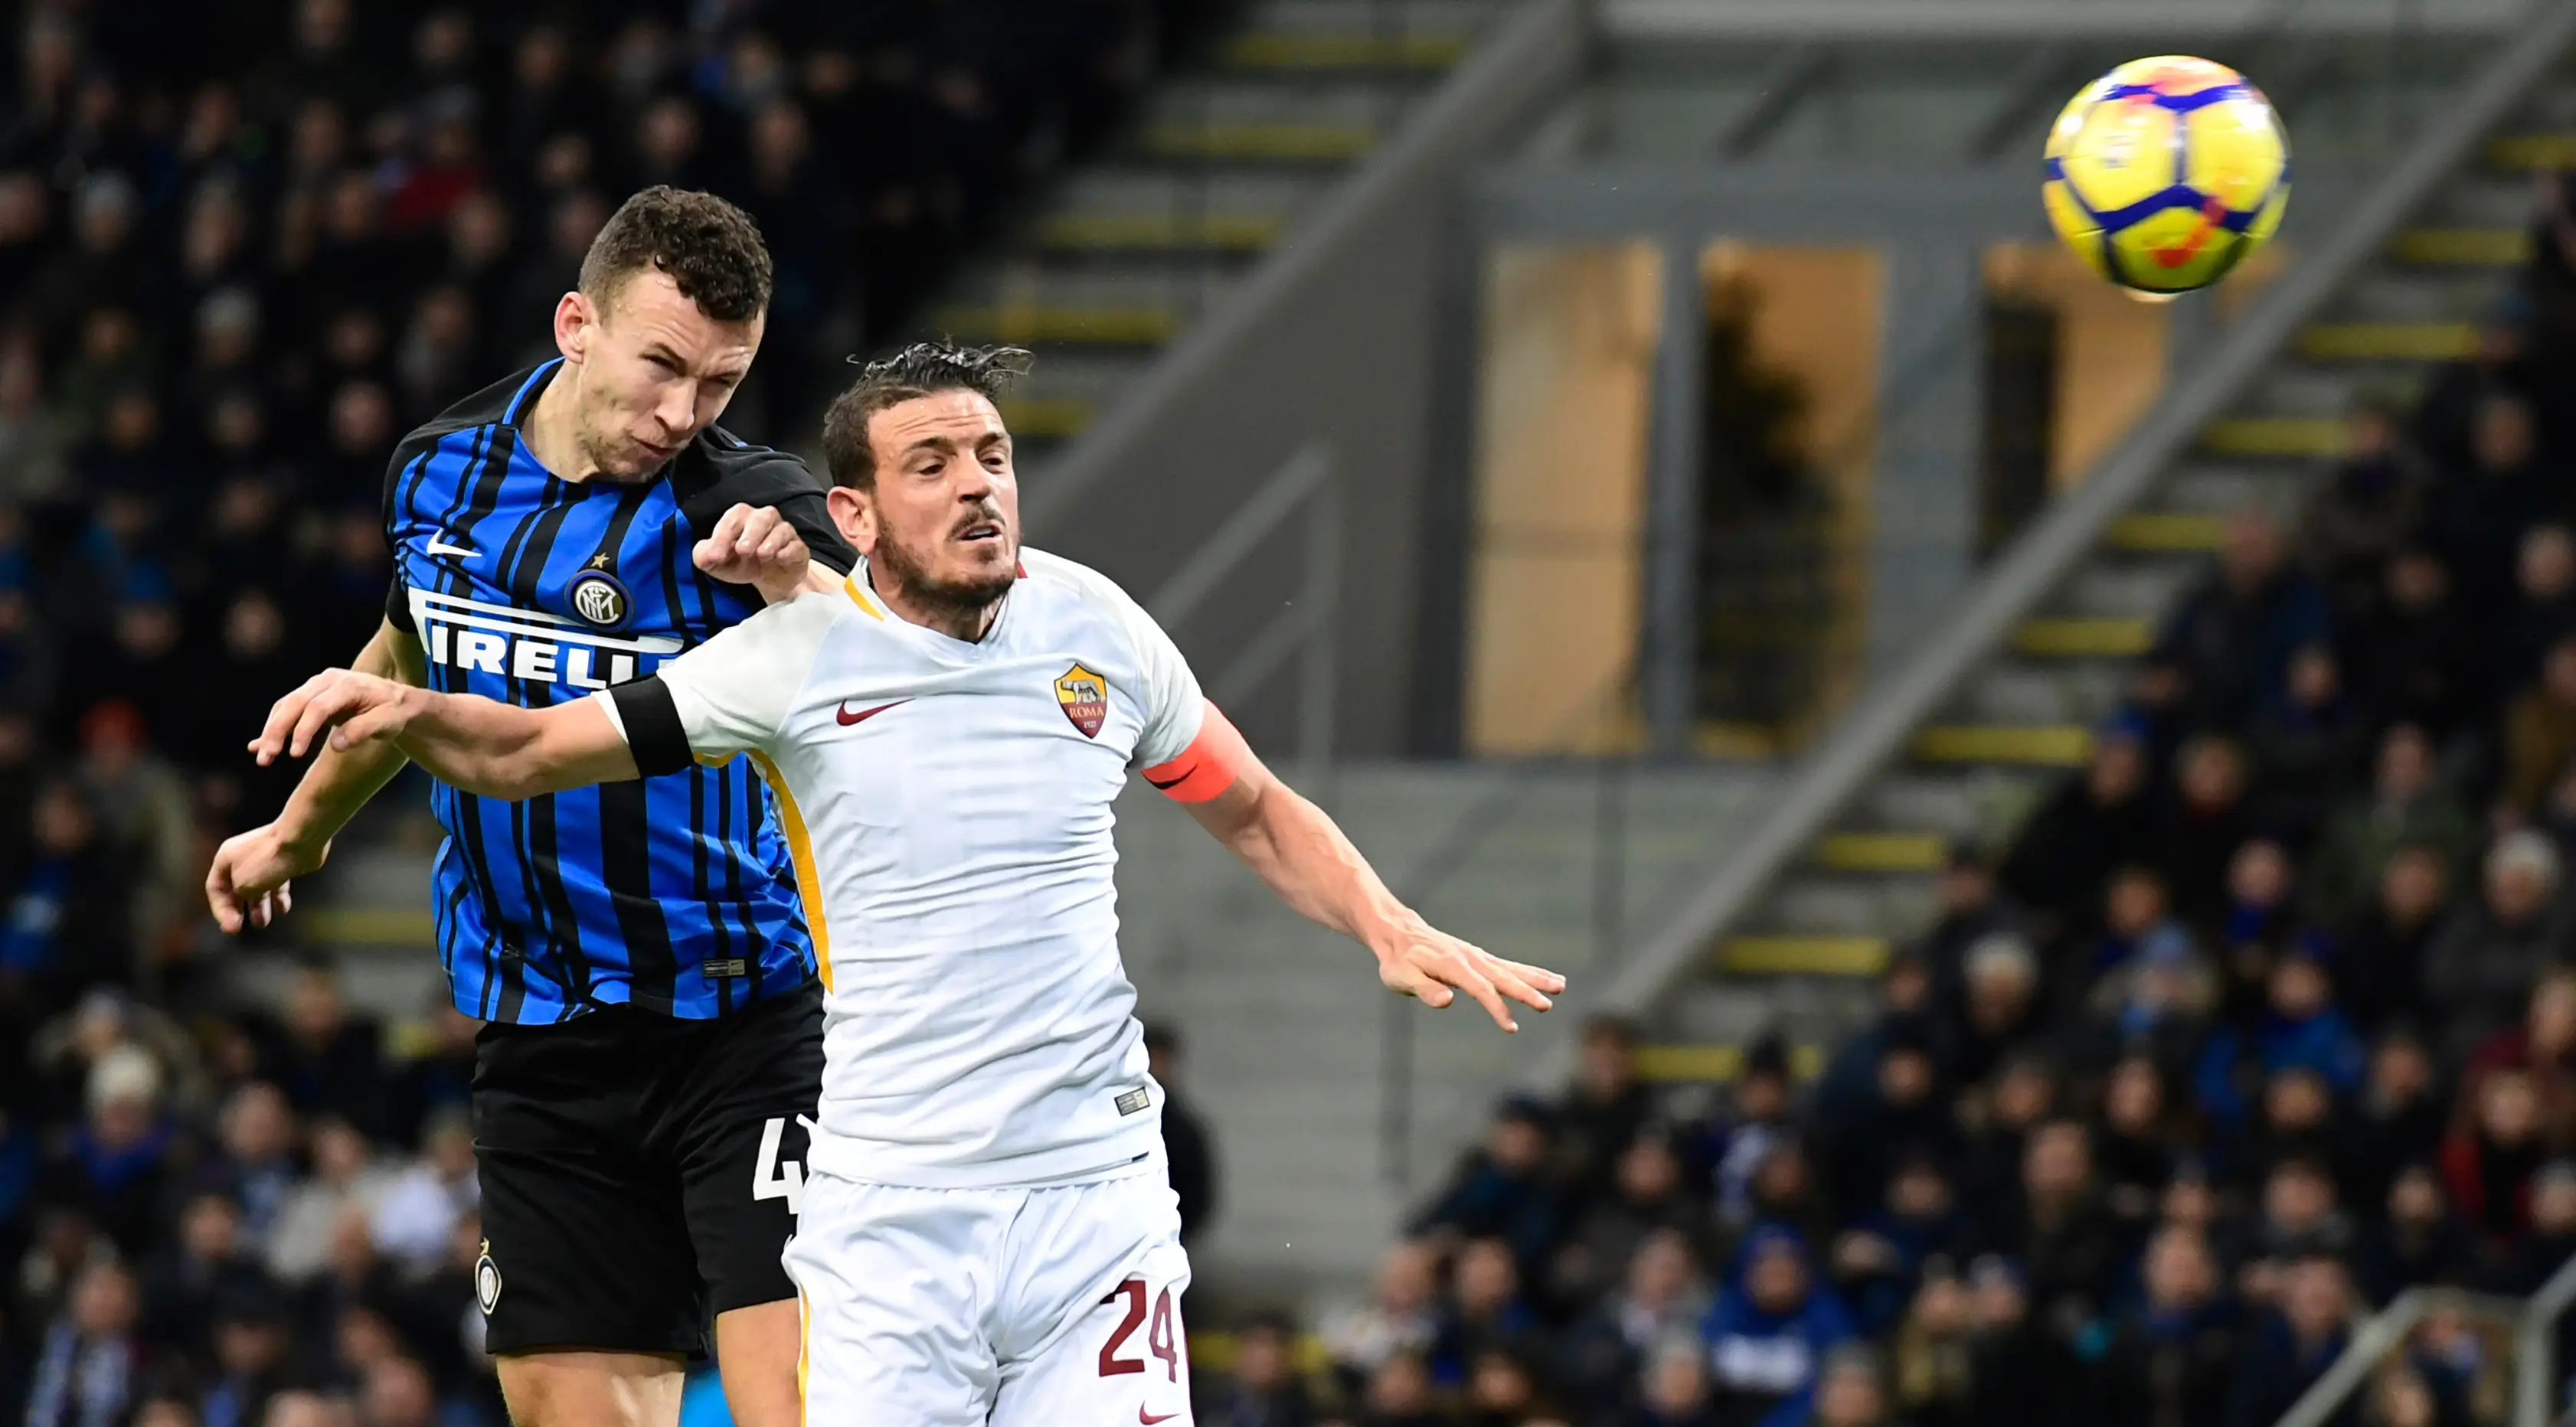 Pemain Inter Milan, Ivan Perisic berebut bola dengan pemain AS Roma,  Alessandro Fiorenzi dalam lanjutan Serie A Liga Italia di Giuseppe Meazza, Senin (21/1). Inter Milan selamat dari kekalahan setelah bermain imbang 1-1 atas AS Roma (MIGUEL MEDINA / AFP)